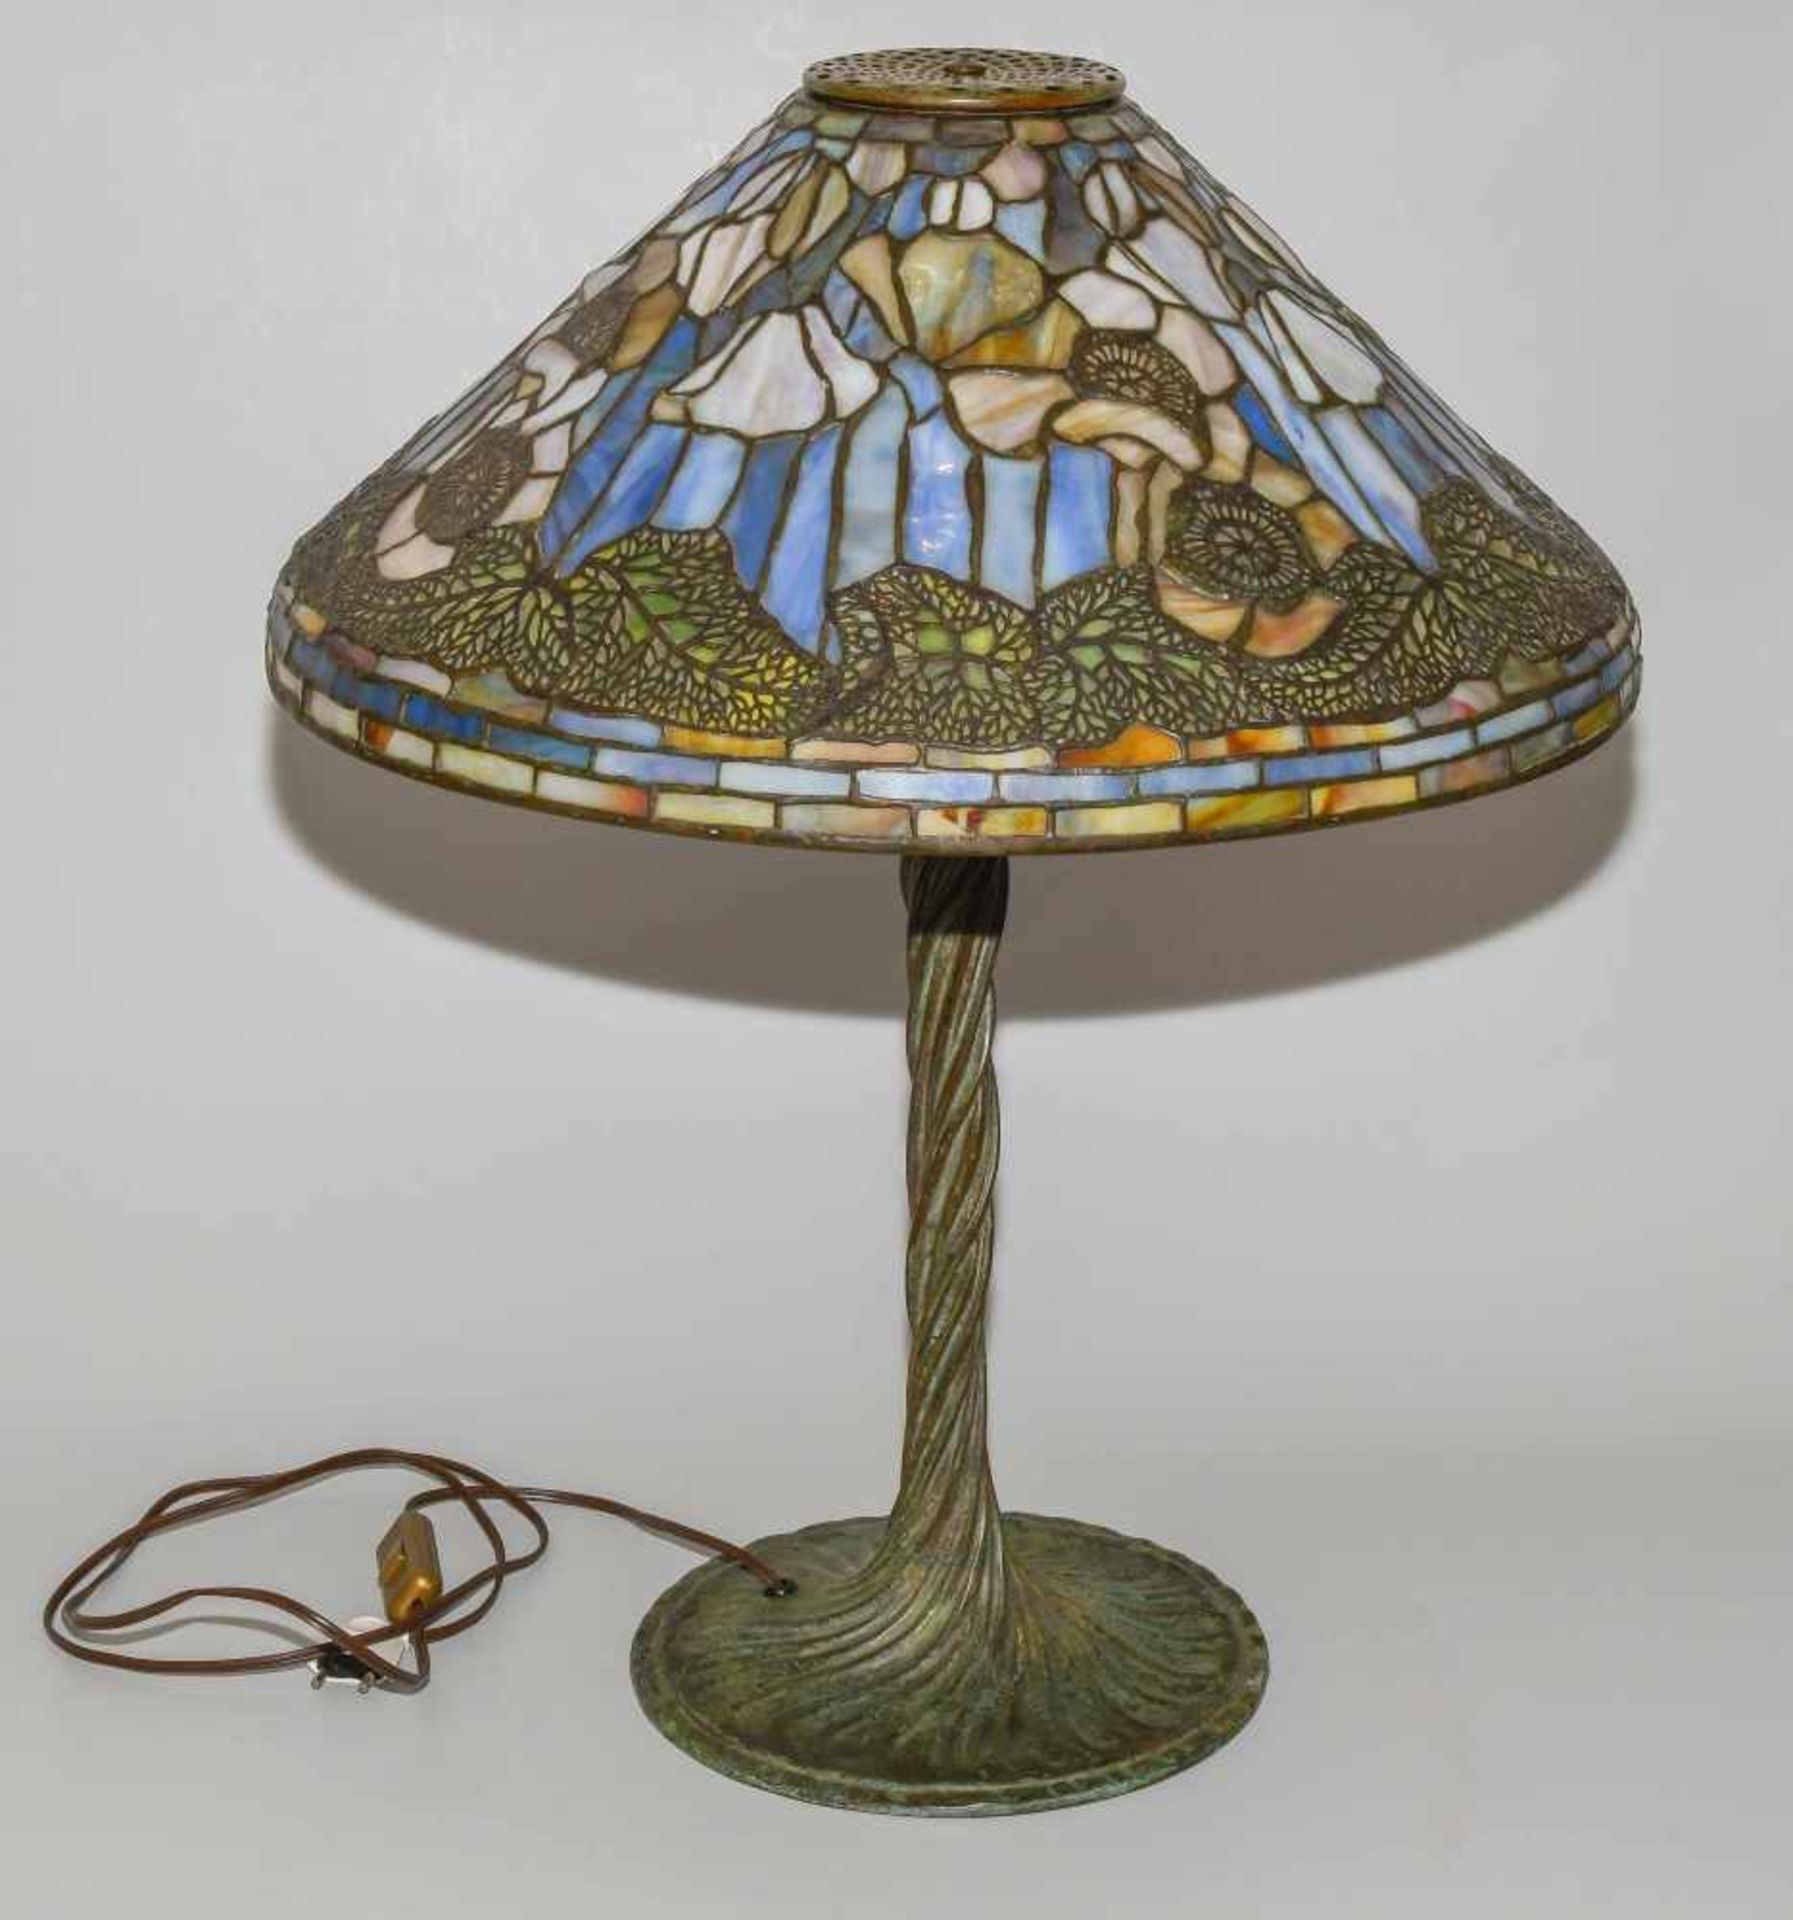 Tiffany Studios New YorkTischlampe "Poppy". Schirm aus "leaded Glass", weisser Mohn mit Blättern, - Image 23 of 24